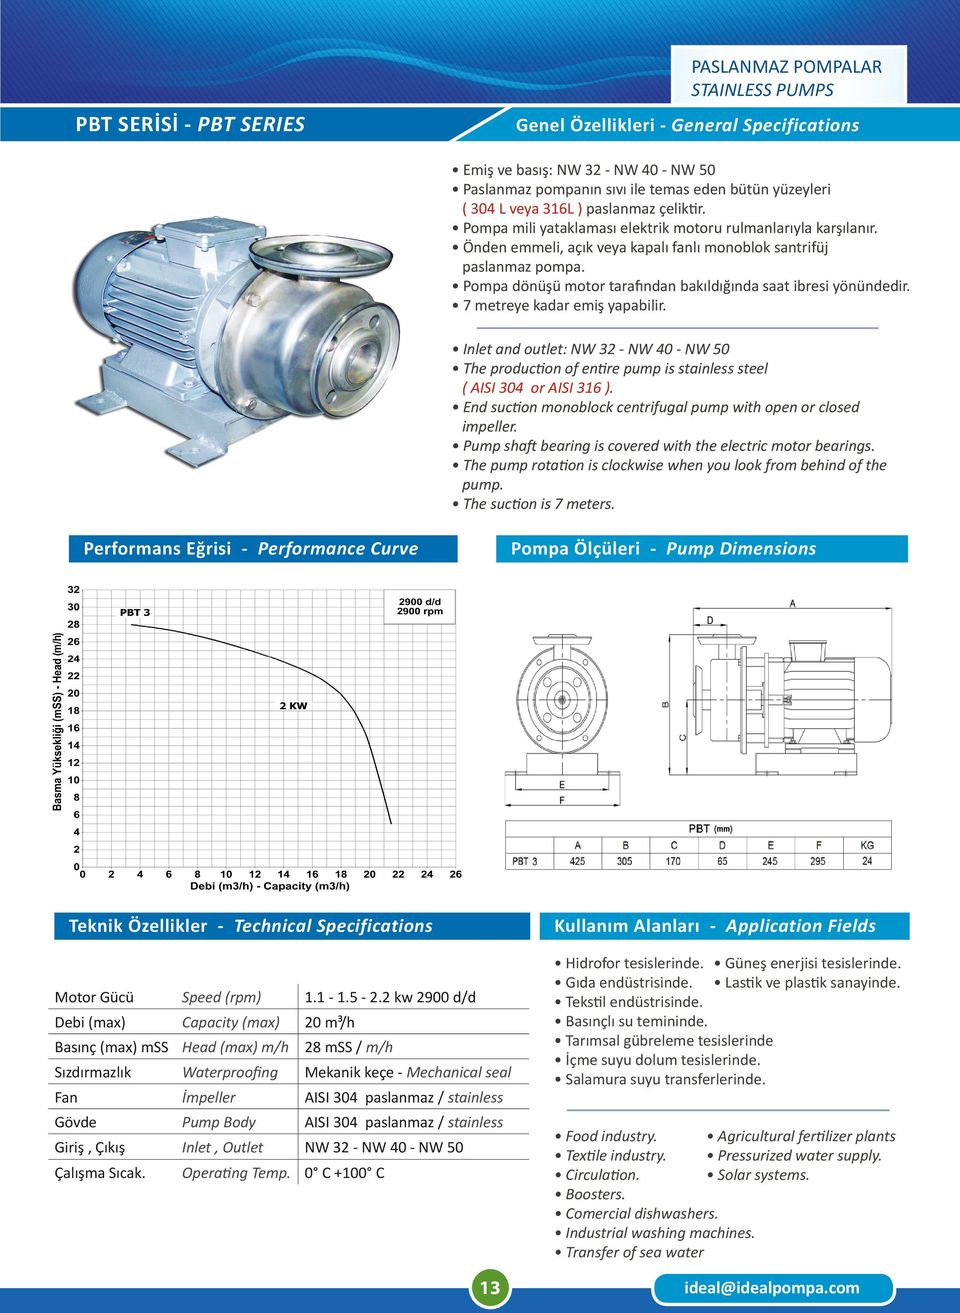 2 kw 2900 d/d Debi (max) Capacity (max) 20 m³/h Basınç (max) mss Head (max) m/h 28 mss / m/h Fan